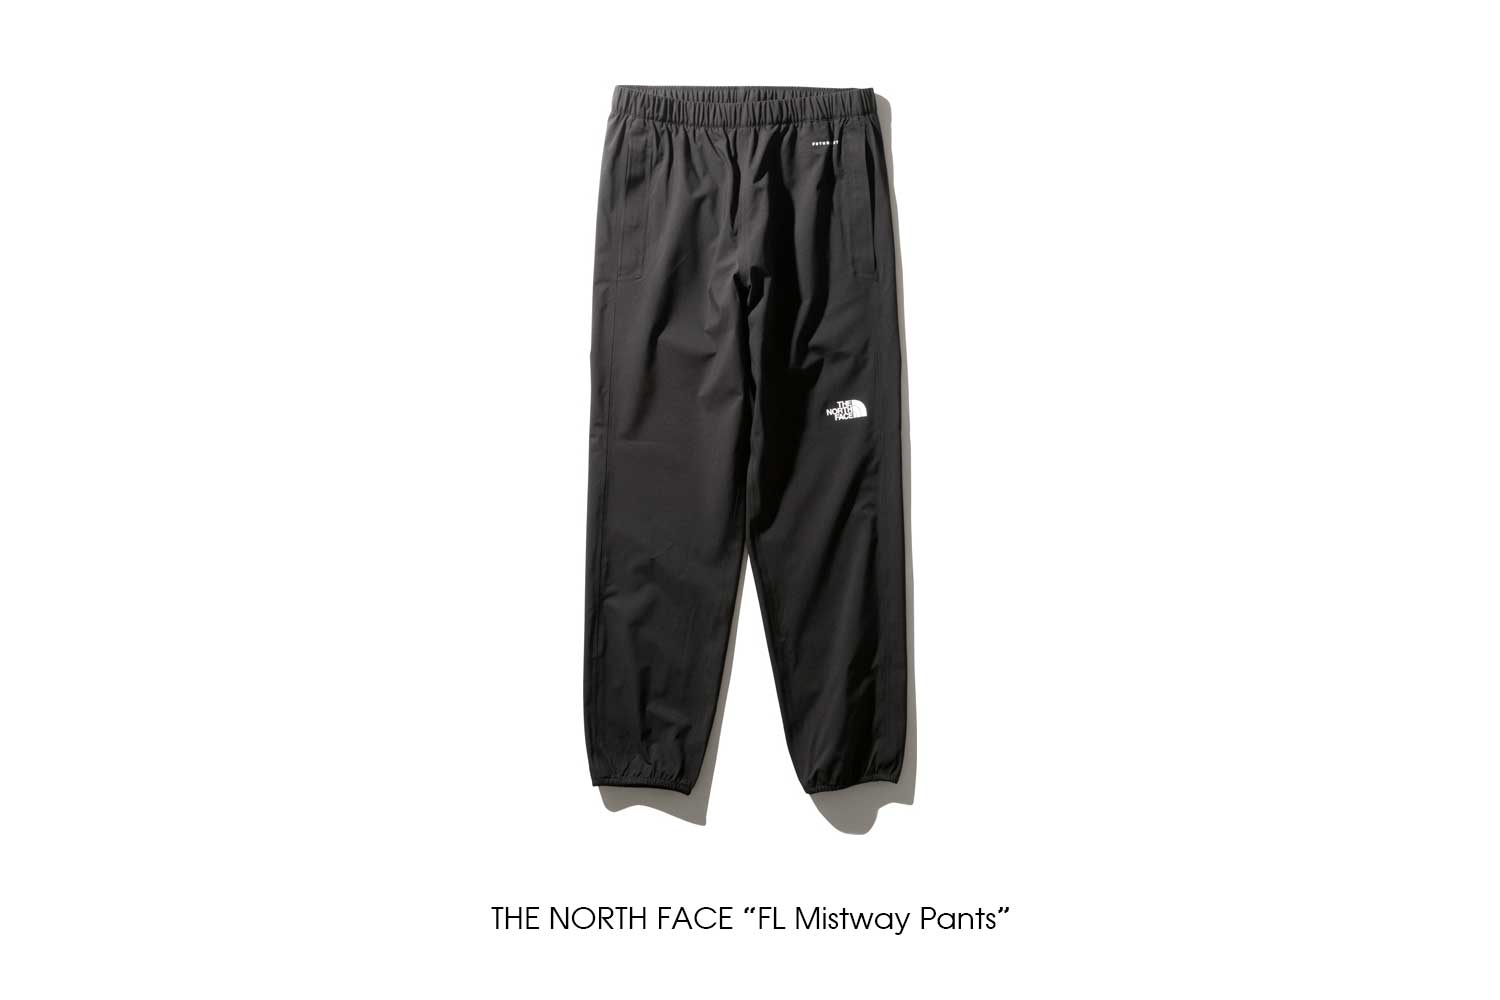 THE NORTH FACE "FL Mistway Pants"